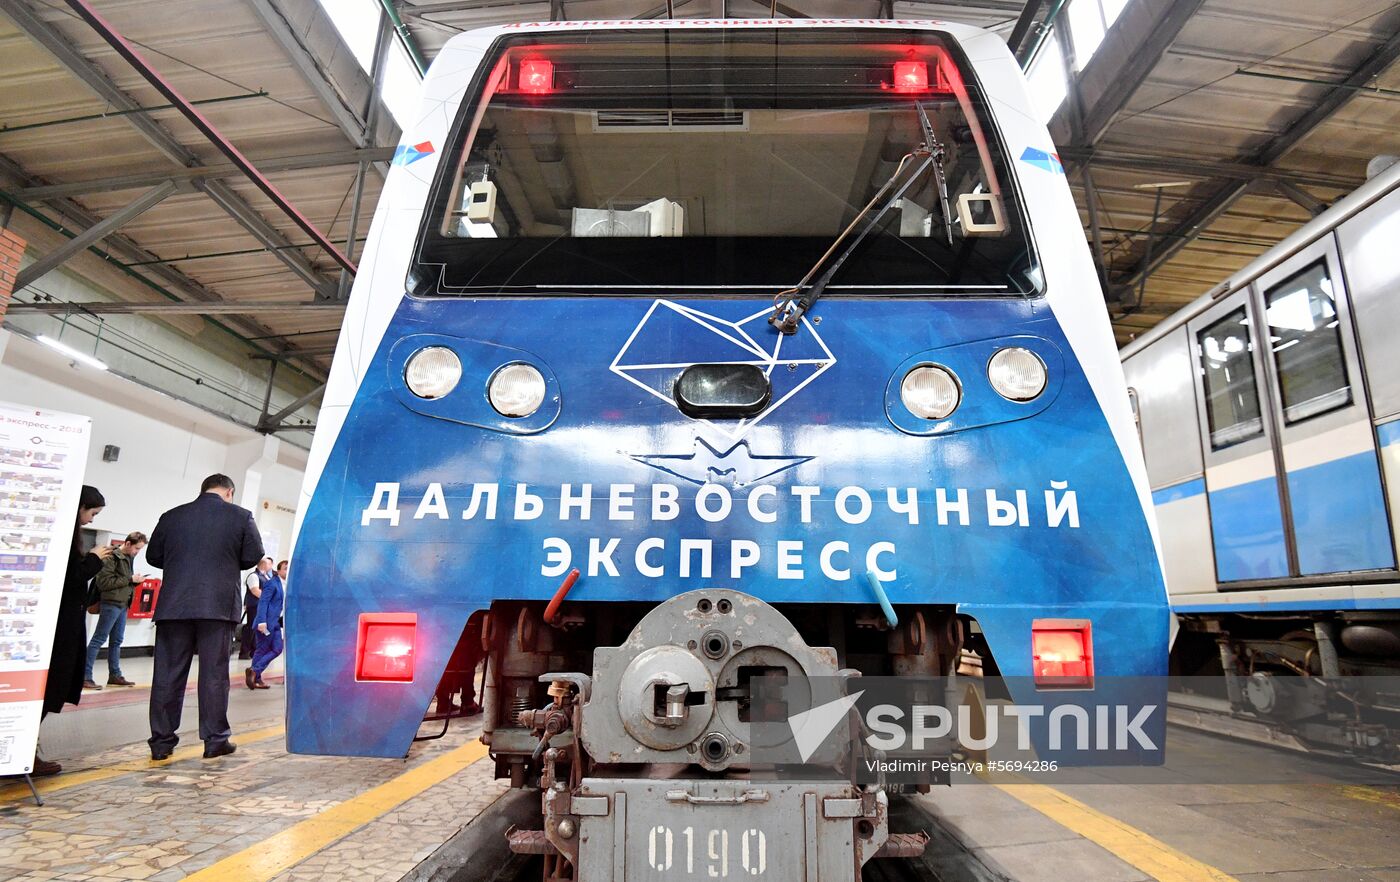 Russia Decorated Metro Train